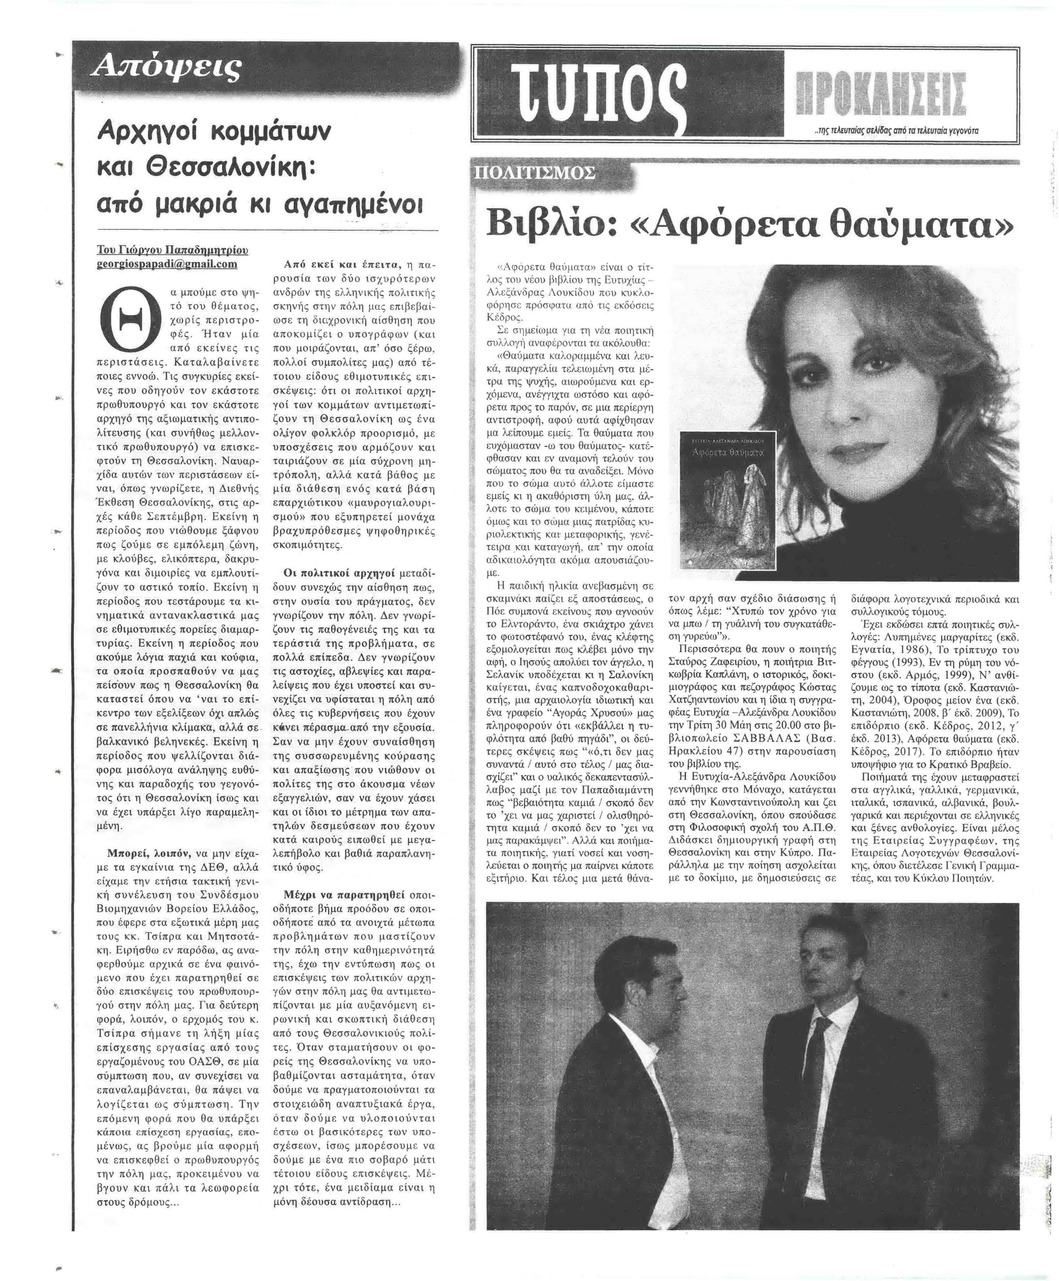 Οπισθόφυλλο εφημερίδας Τύπος Θεσσαλονίκης